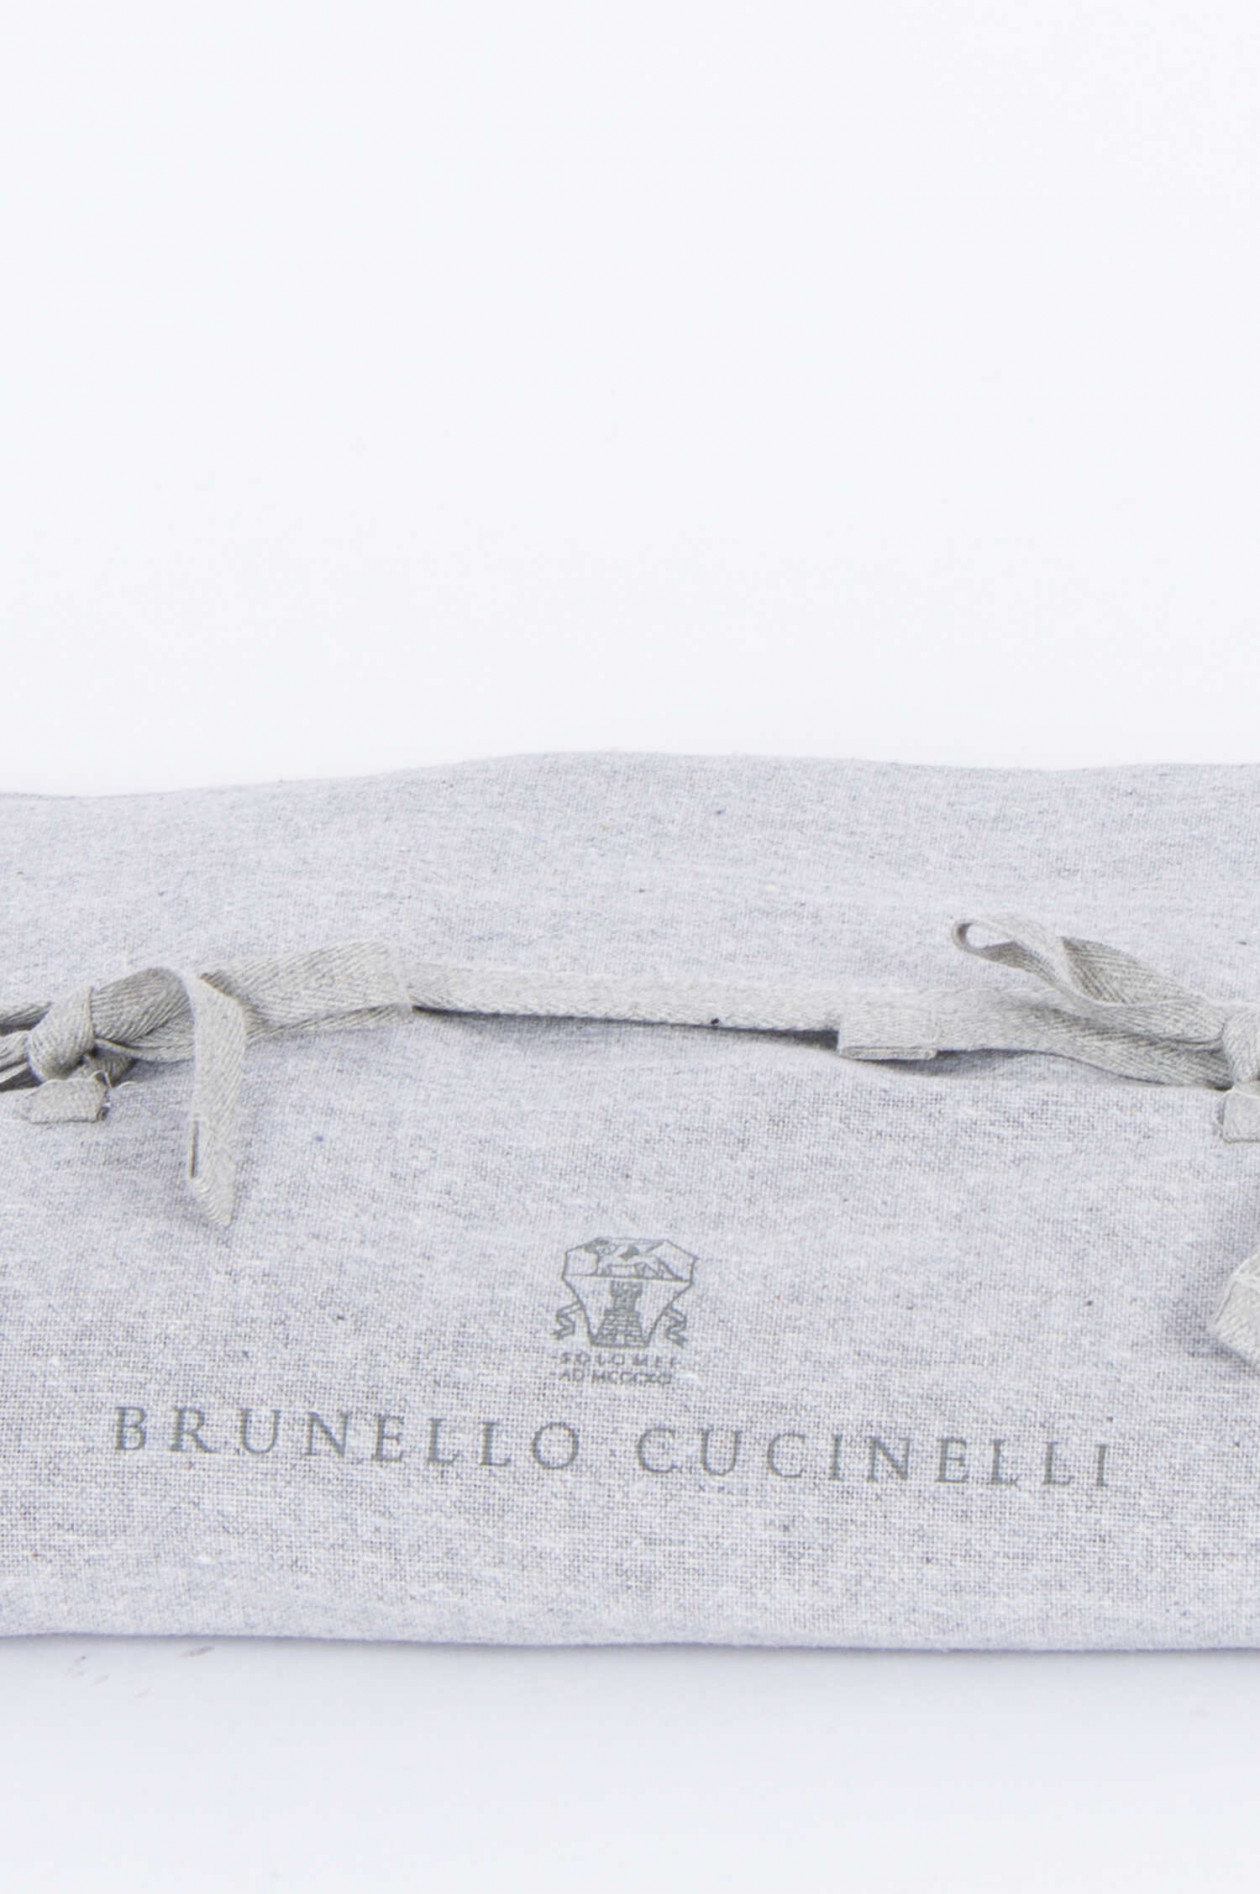 Cucinelli Brunello Cucinelli DAMEN Kupfer Hematit .925 Silber & Naturstein Halskette 